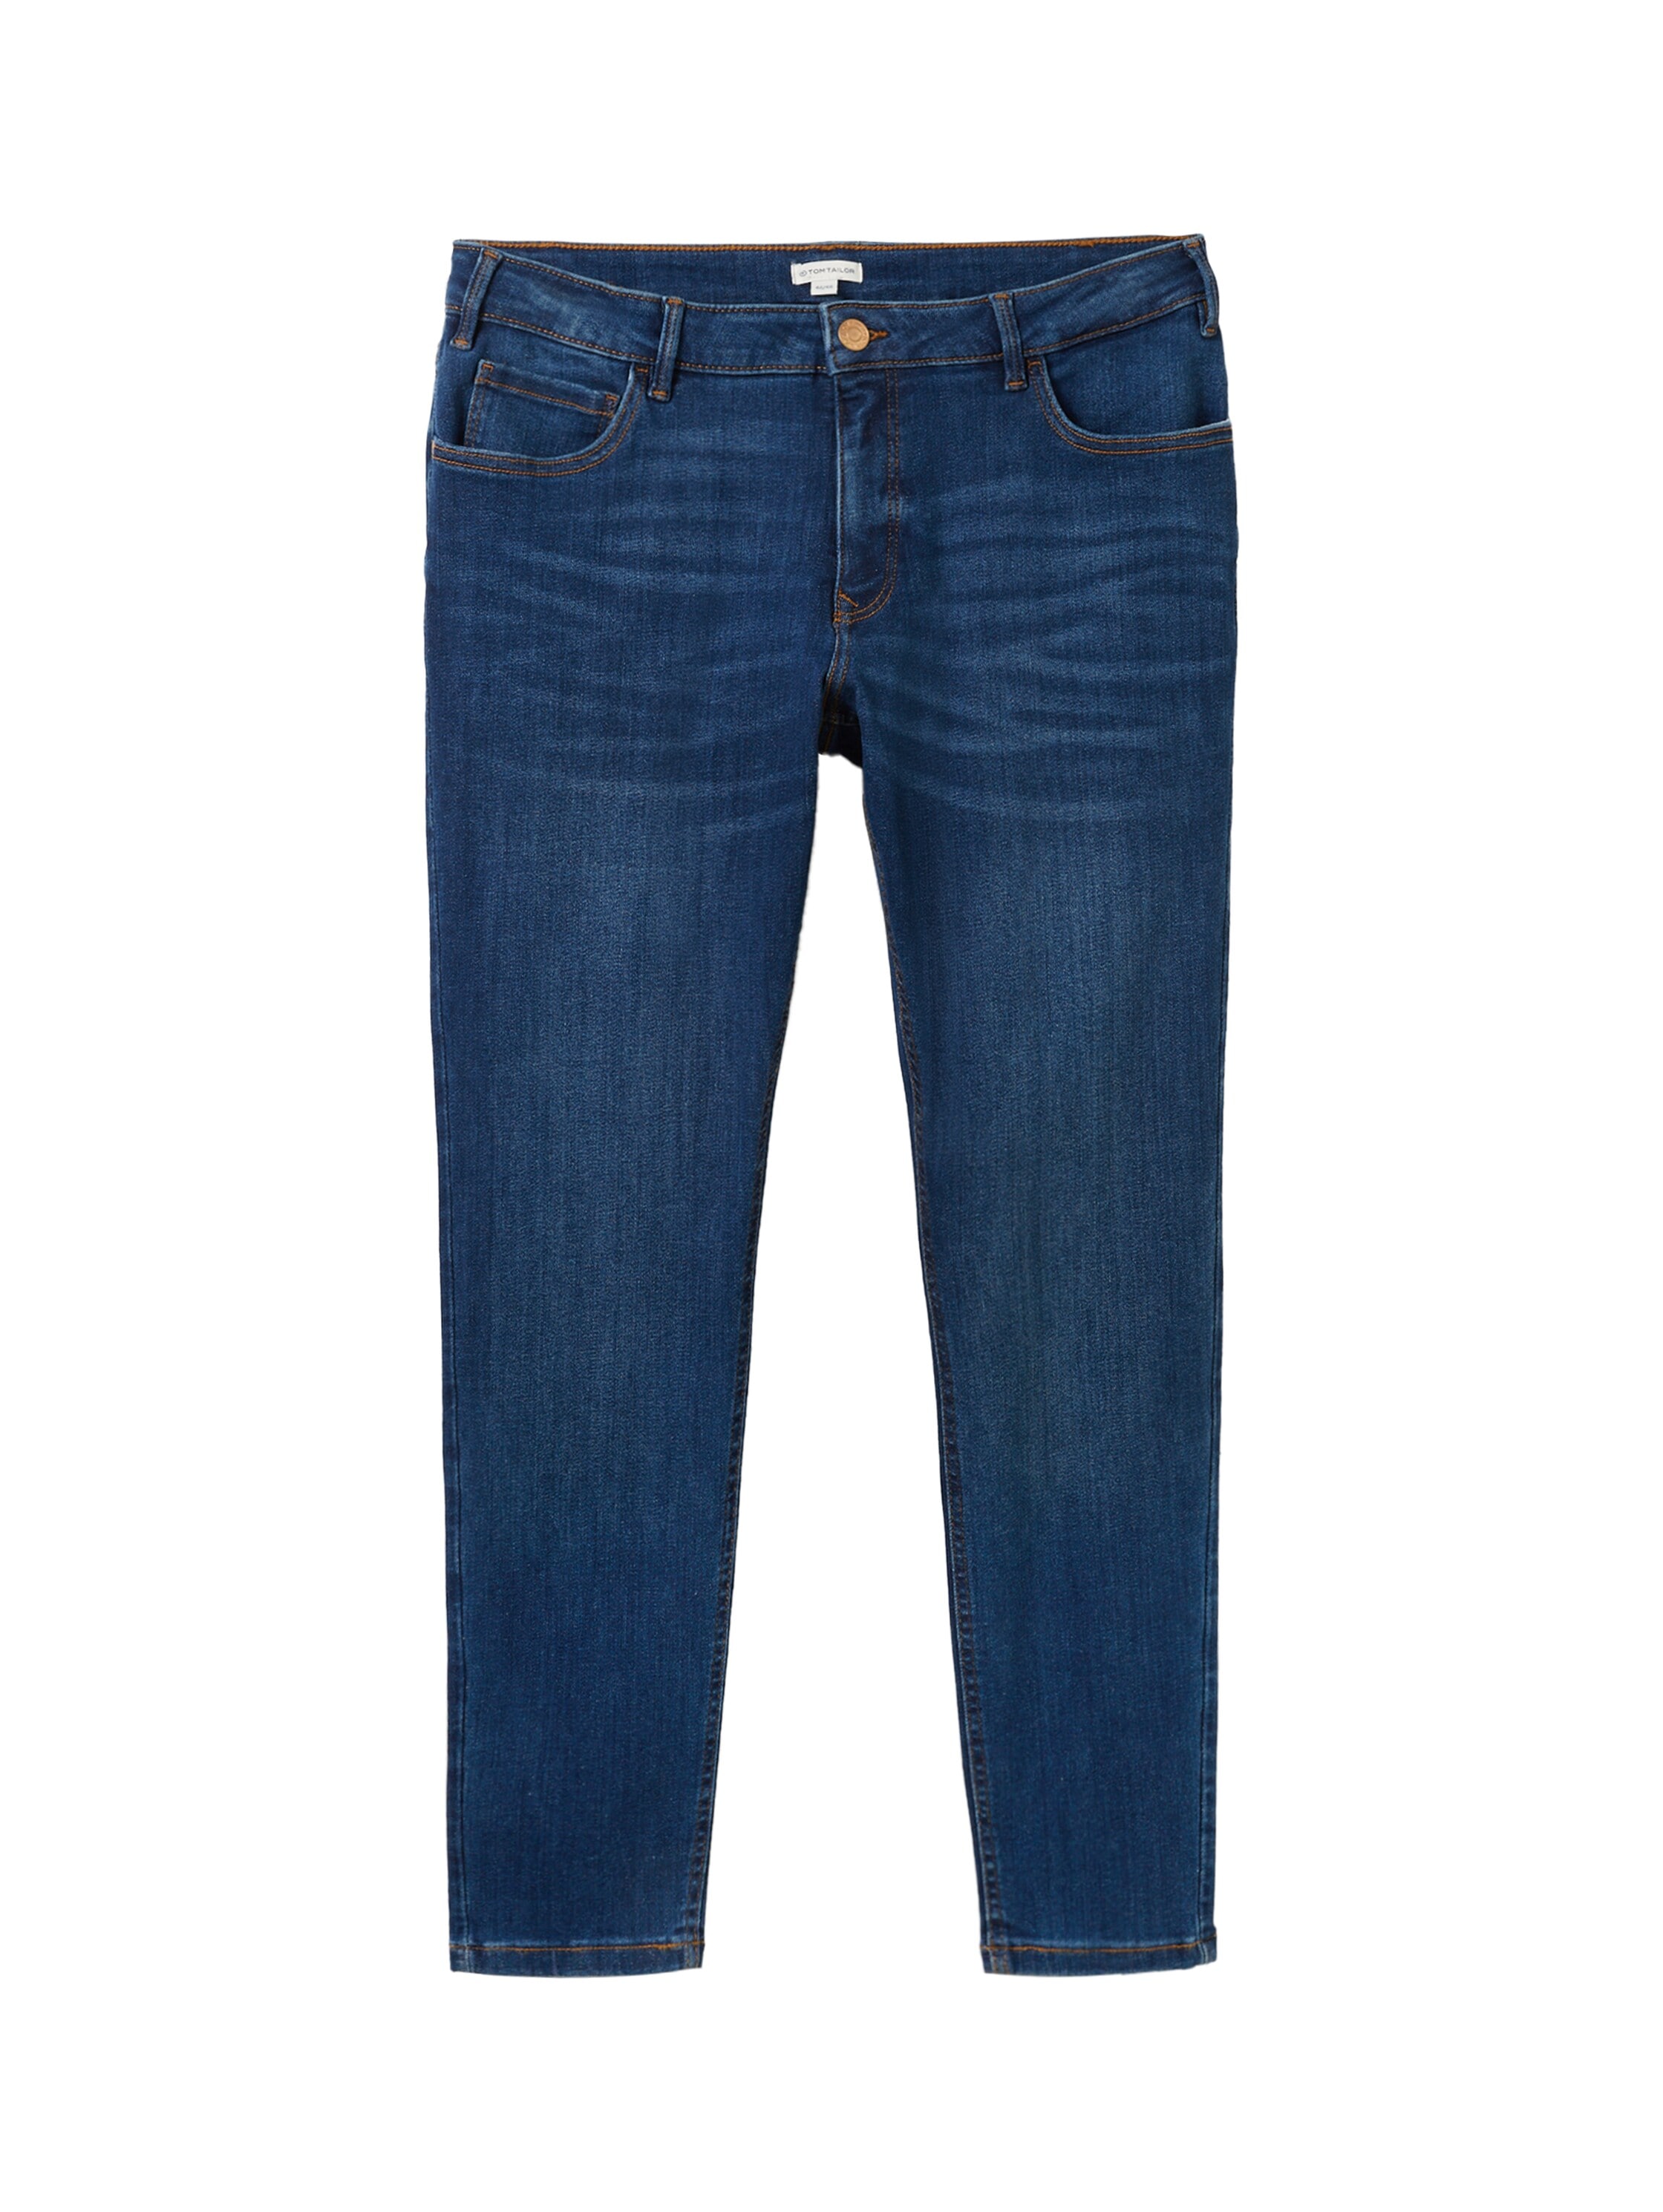 TOM TAILOR PLUS Skinny-fit-Jeans, in figurbetonter 5-Pocket-Form